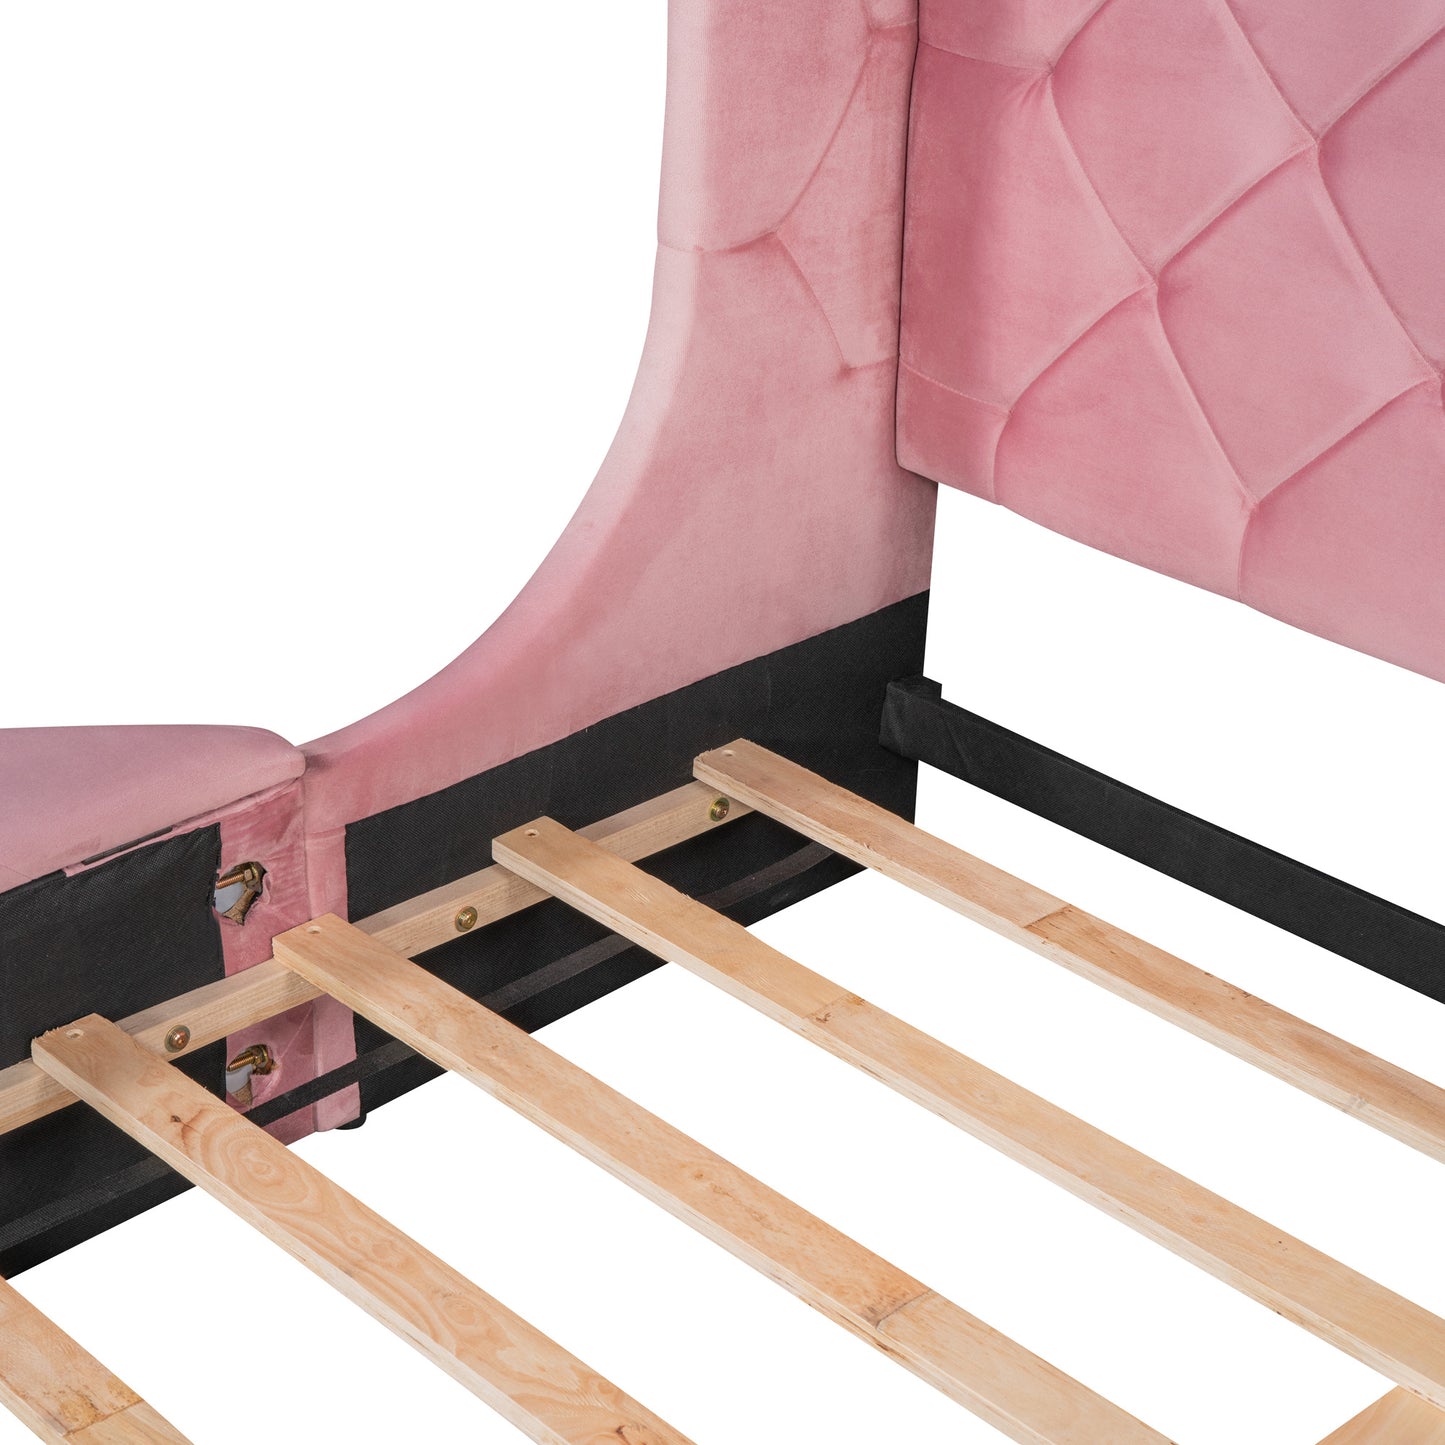 upholstered platform storage velvet bed with wingback headboard- pink